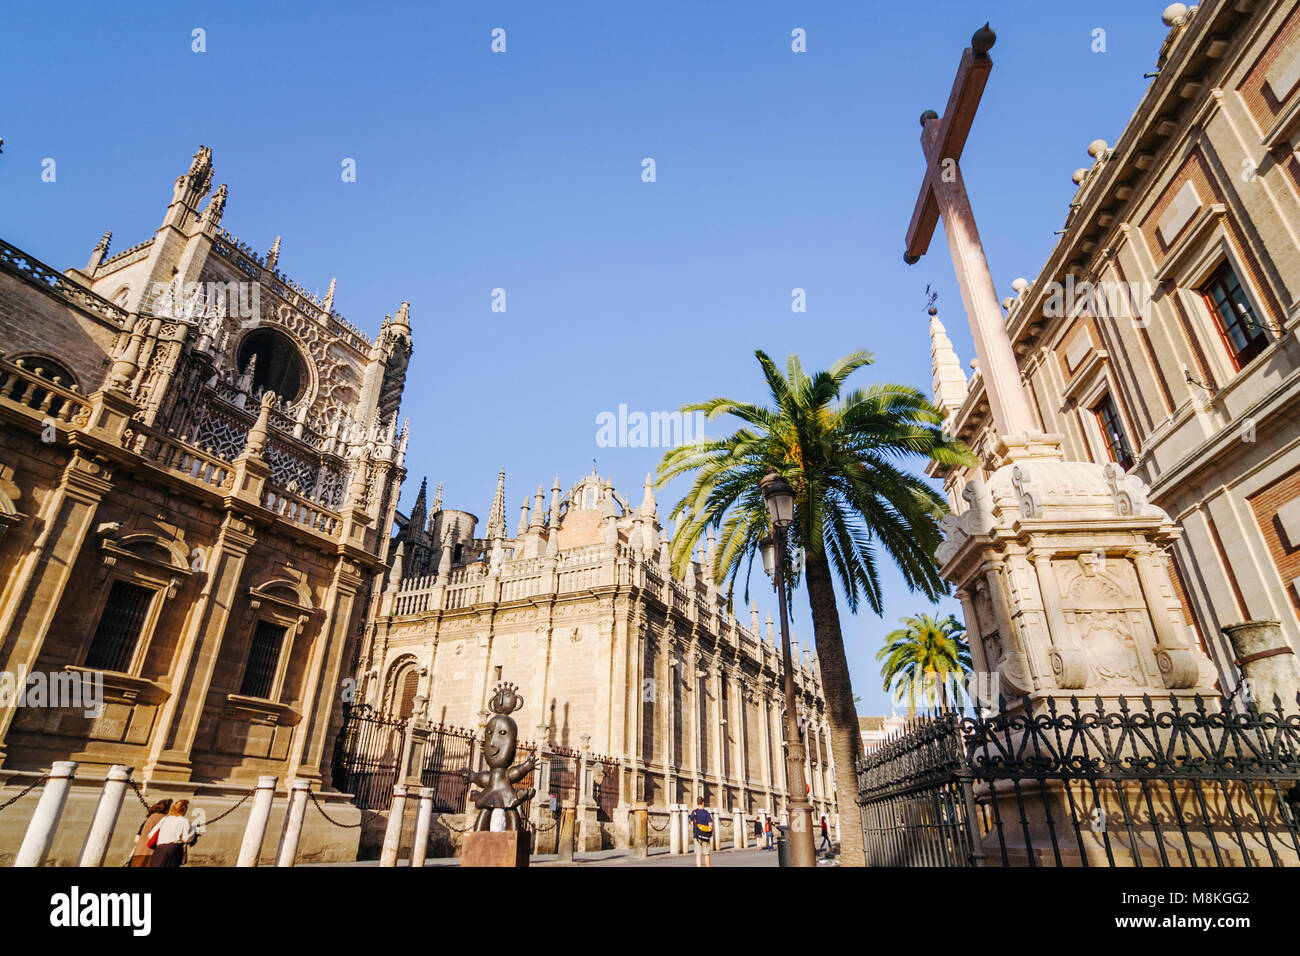 Séville, Andalousie, Espagne : la liste de l'UNESCO Cathédrale de Séville, le plus grand édifice gothique du monde et des Archives générales des Indes. Banque D'Images